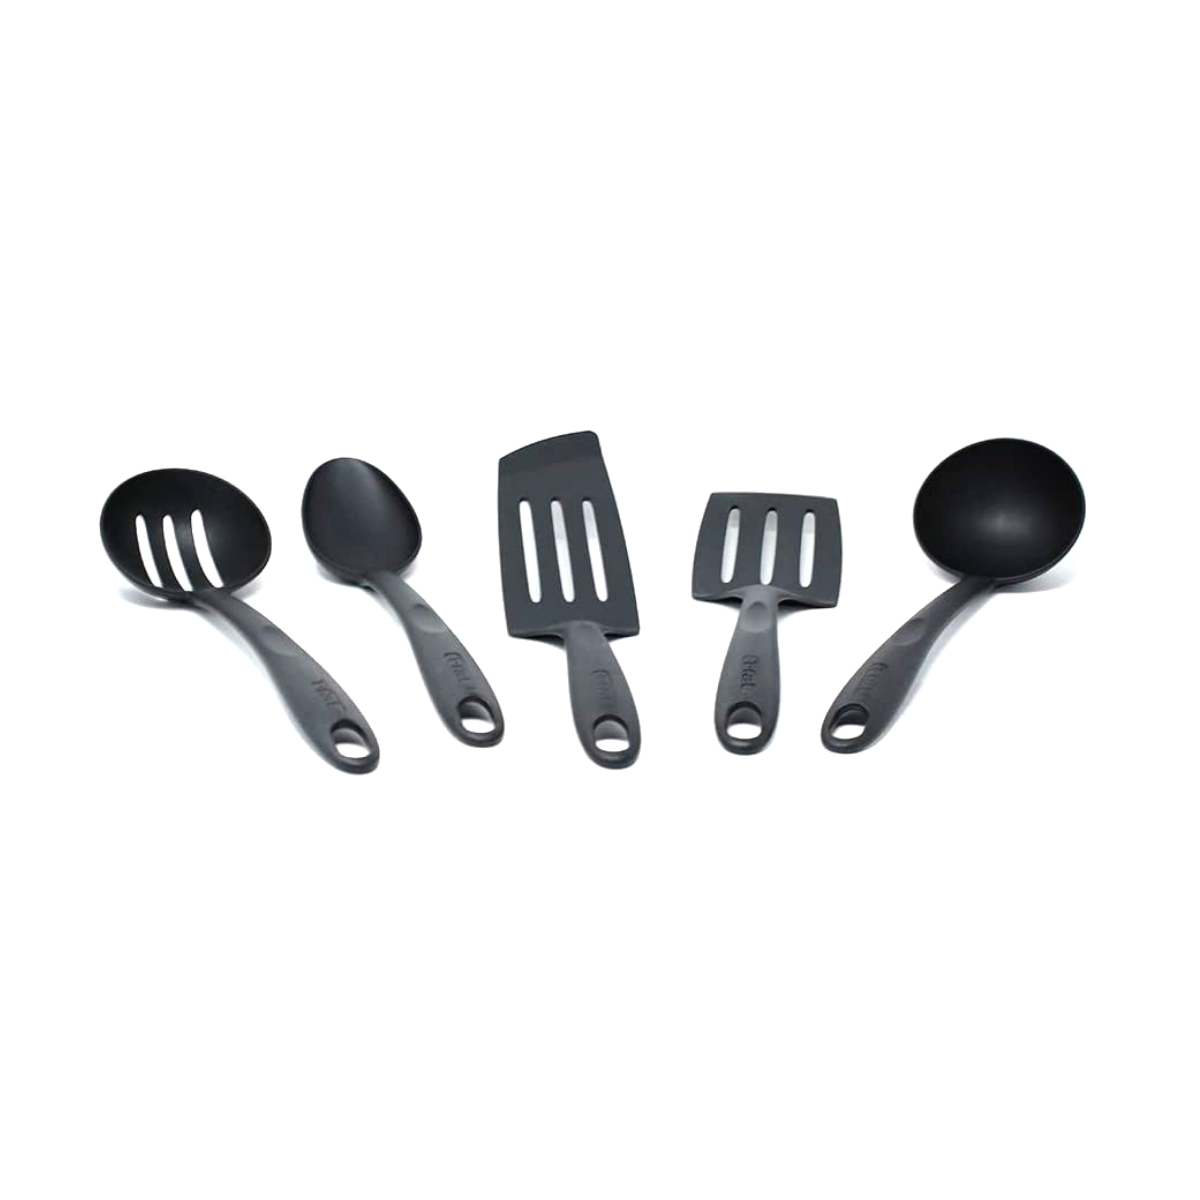 Tefal ® Juego de utensilios de cocina 4 piezas